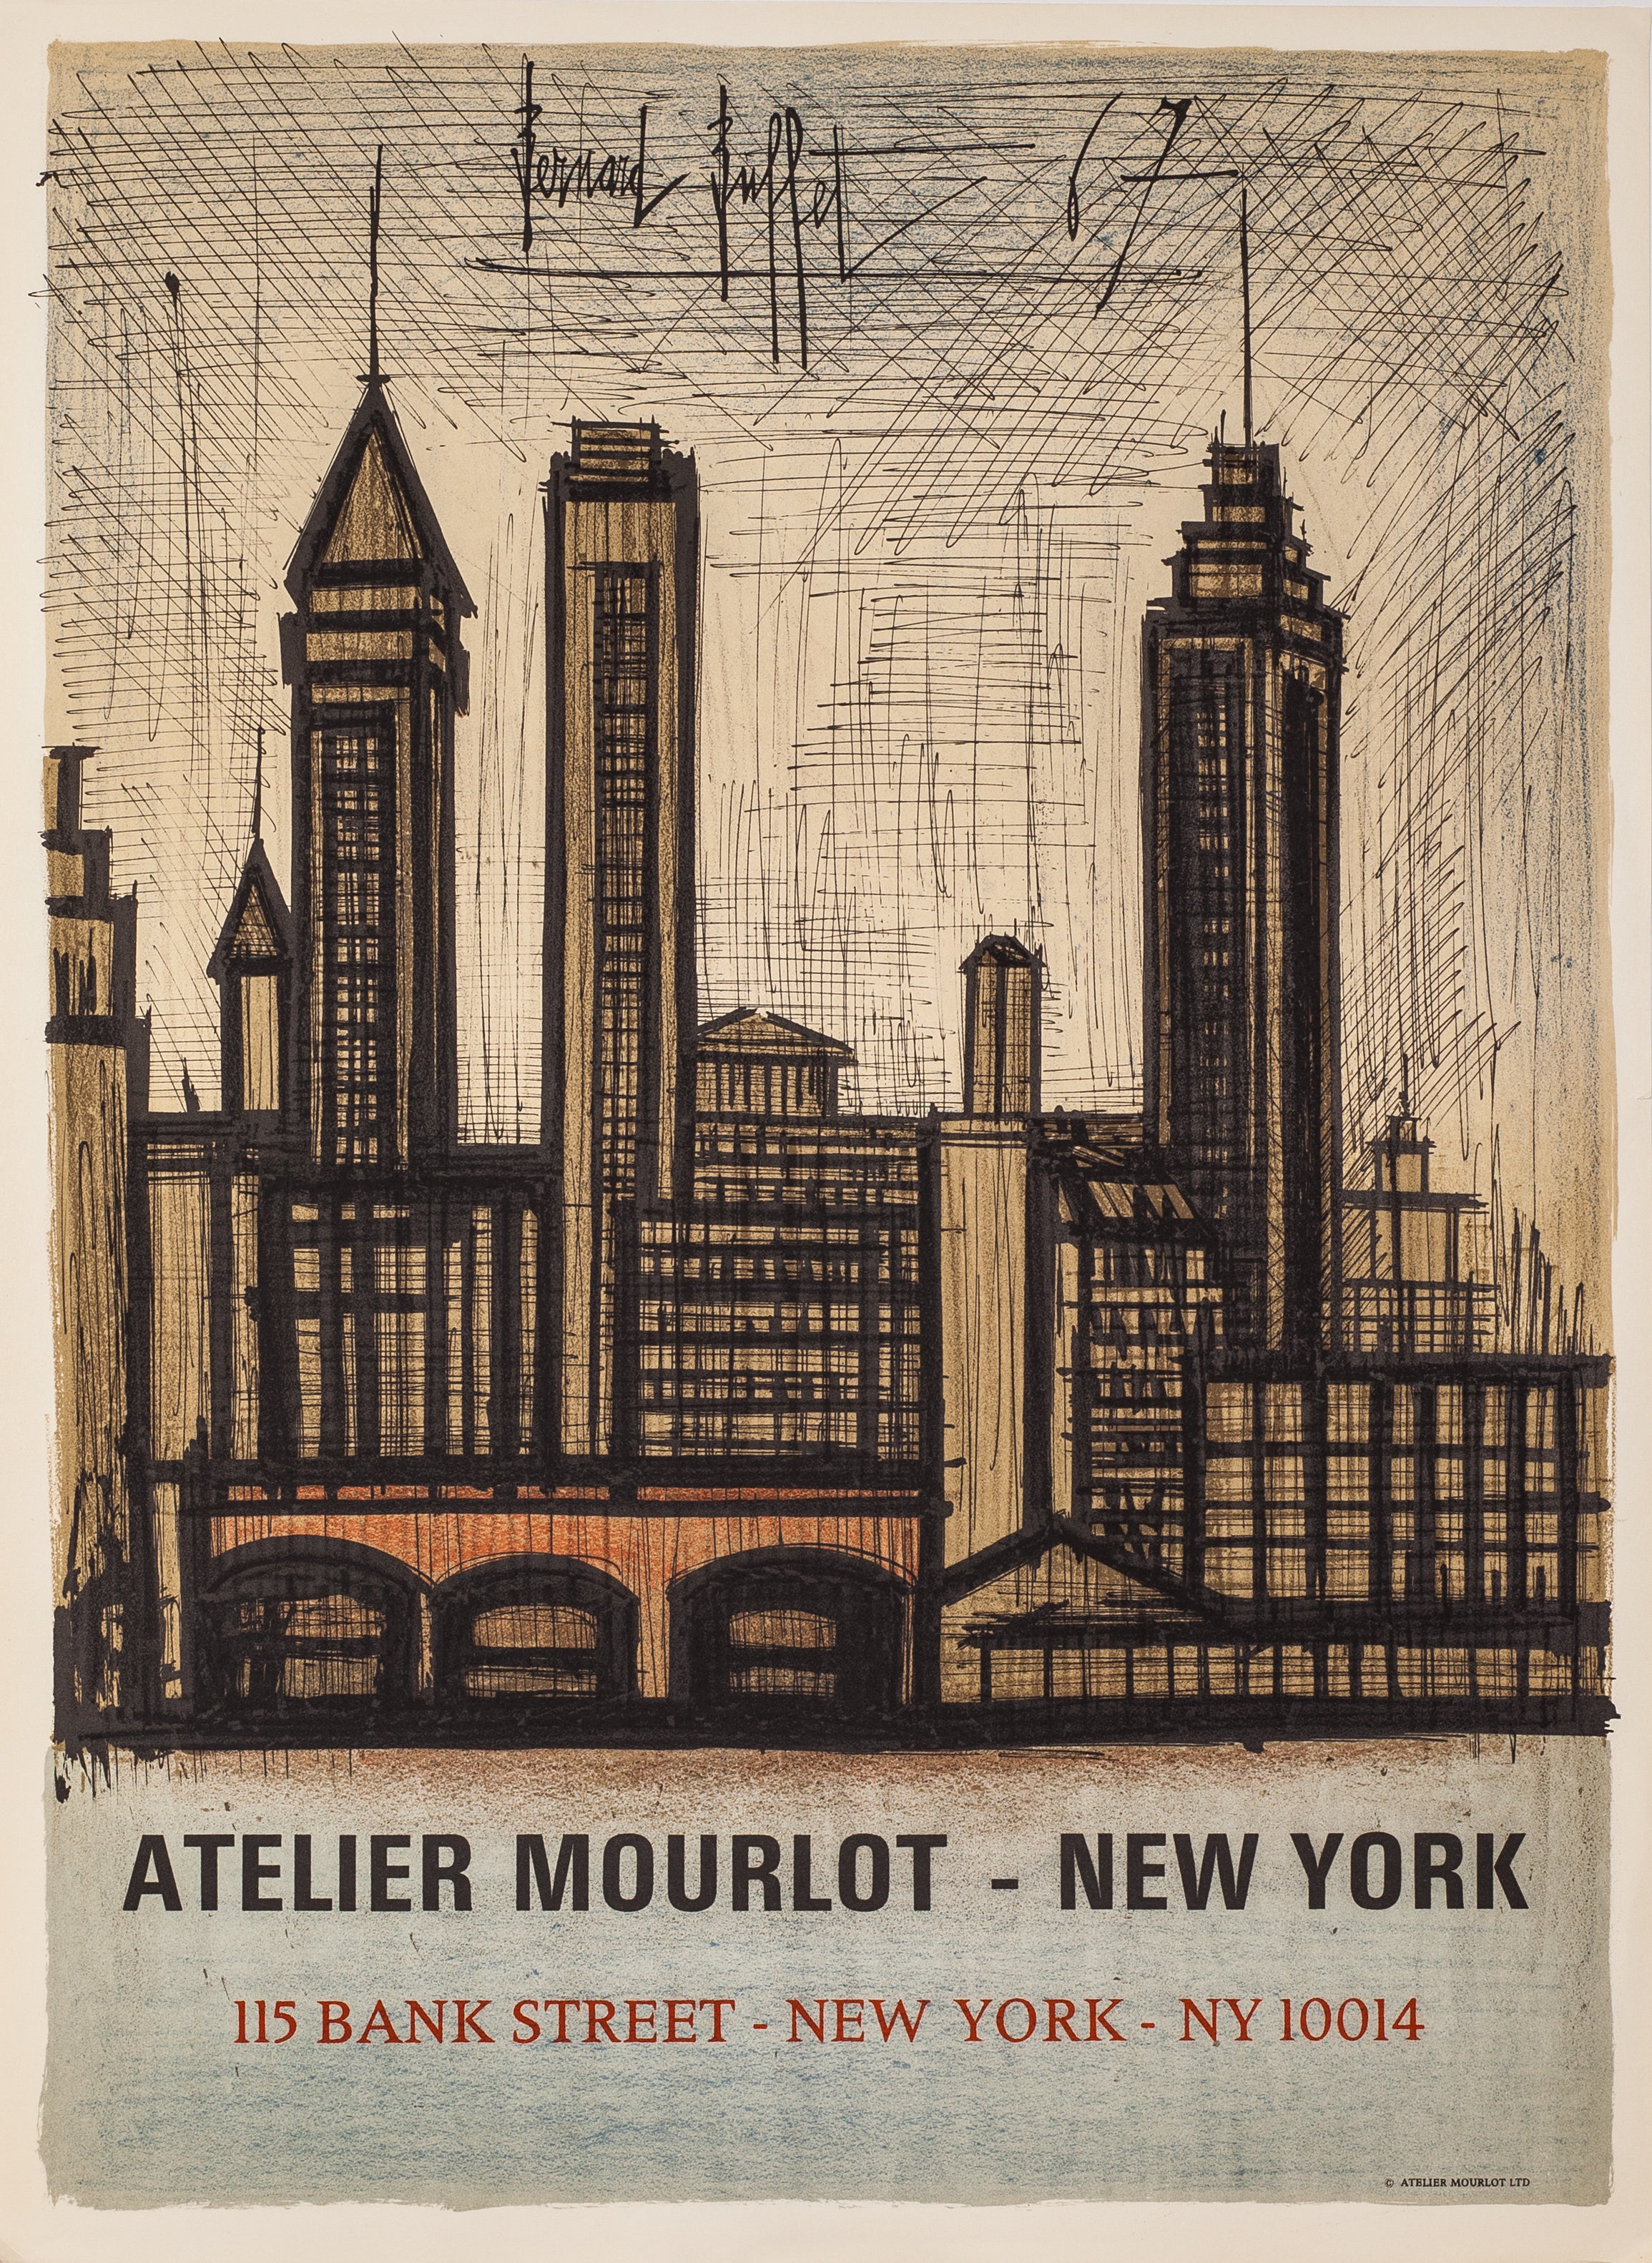 Atelier Mourlot - Bank Street, New York by Bernard Buffet, 1967